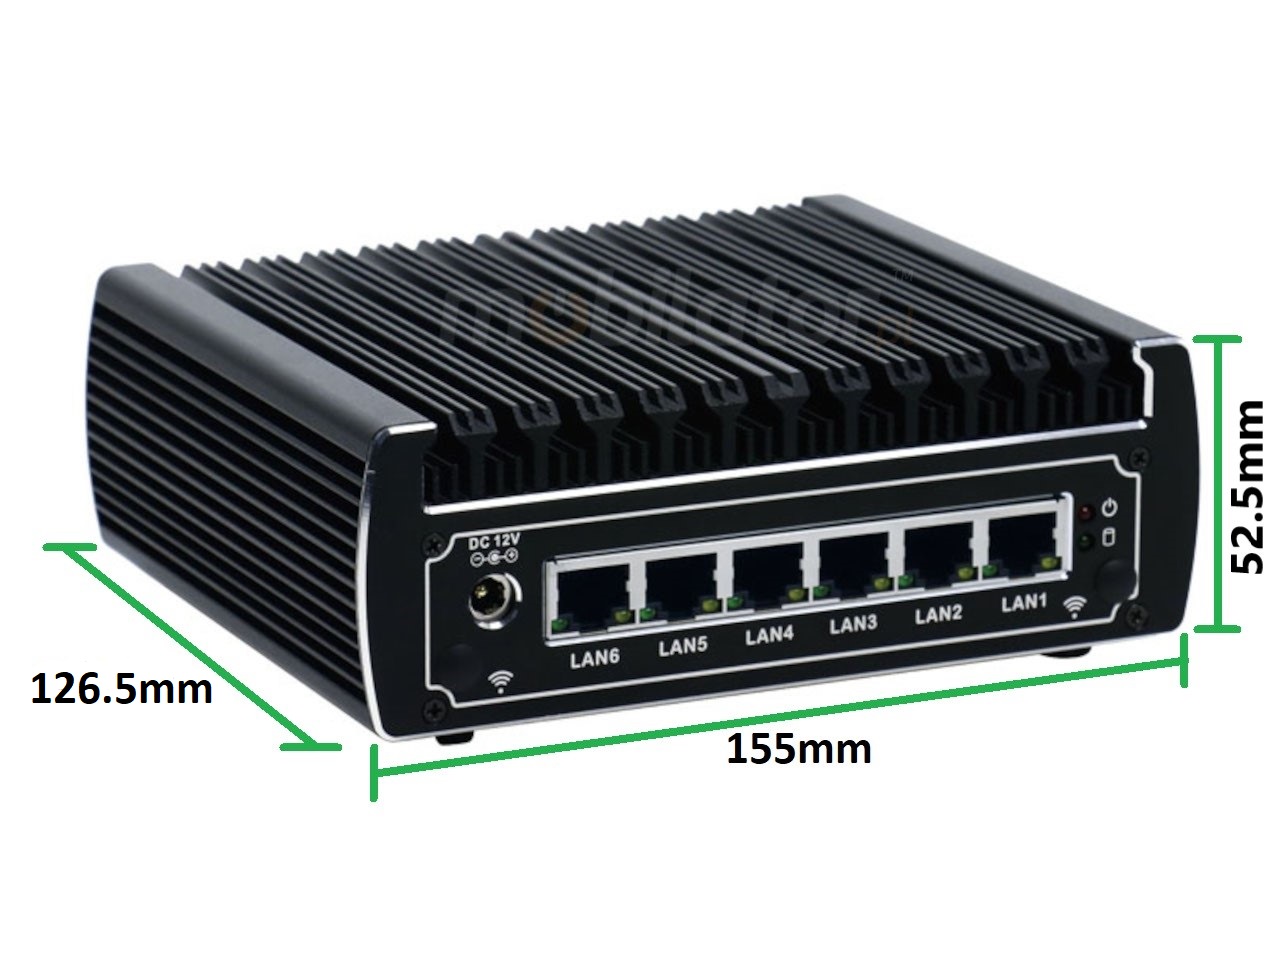  IBOX N133 v.2, wymiary, SSD, DDR4, przemysowy, may, szybki, niezawodny, fanless, industrial, small, LAN, INTEL i3